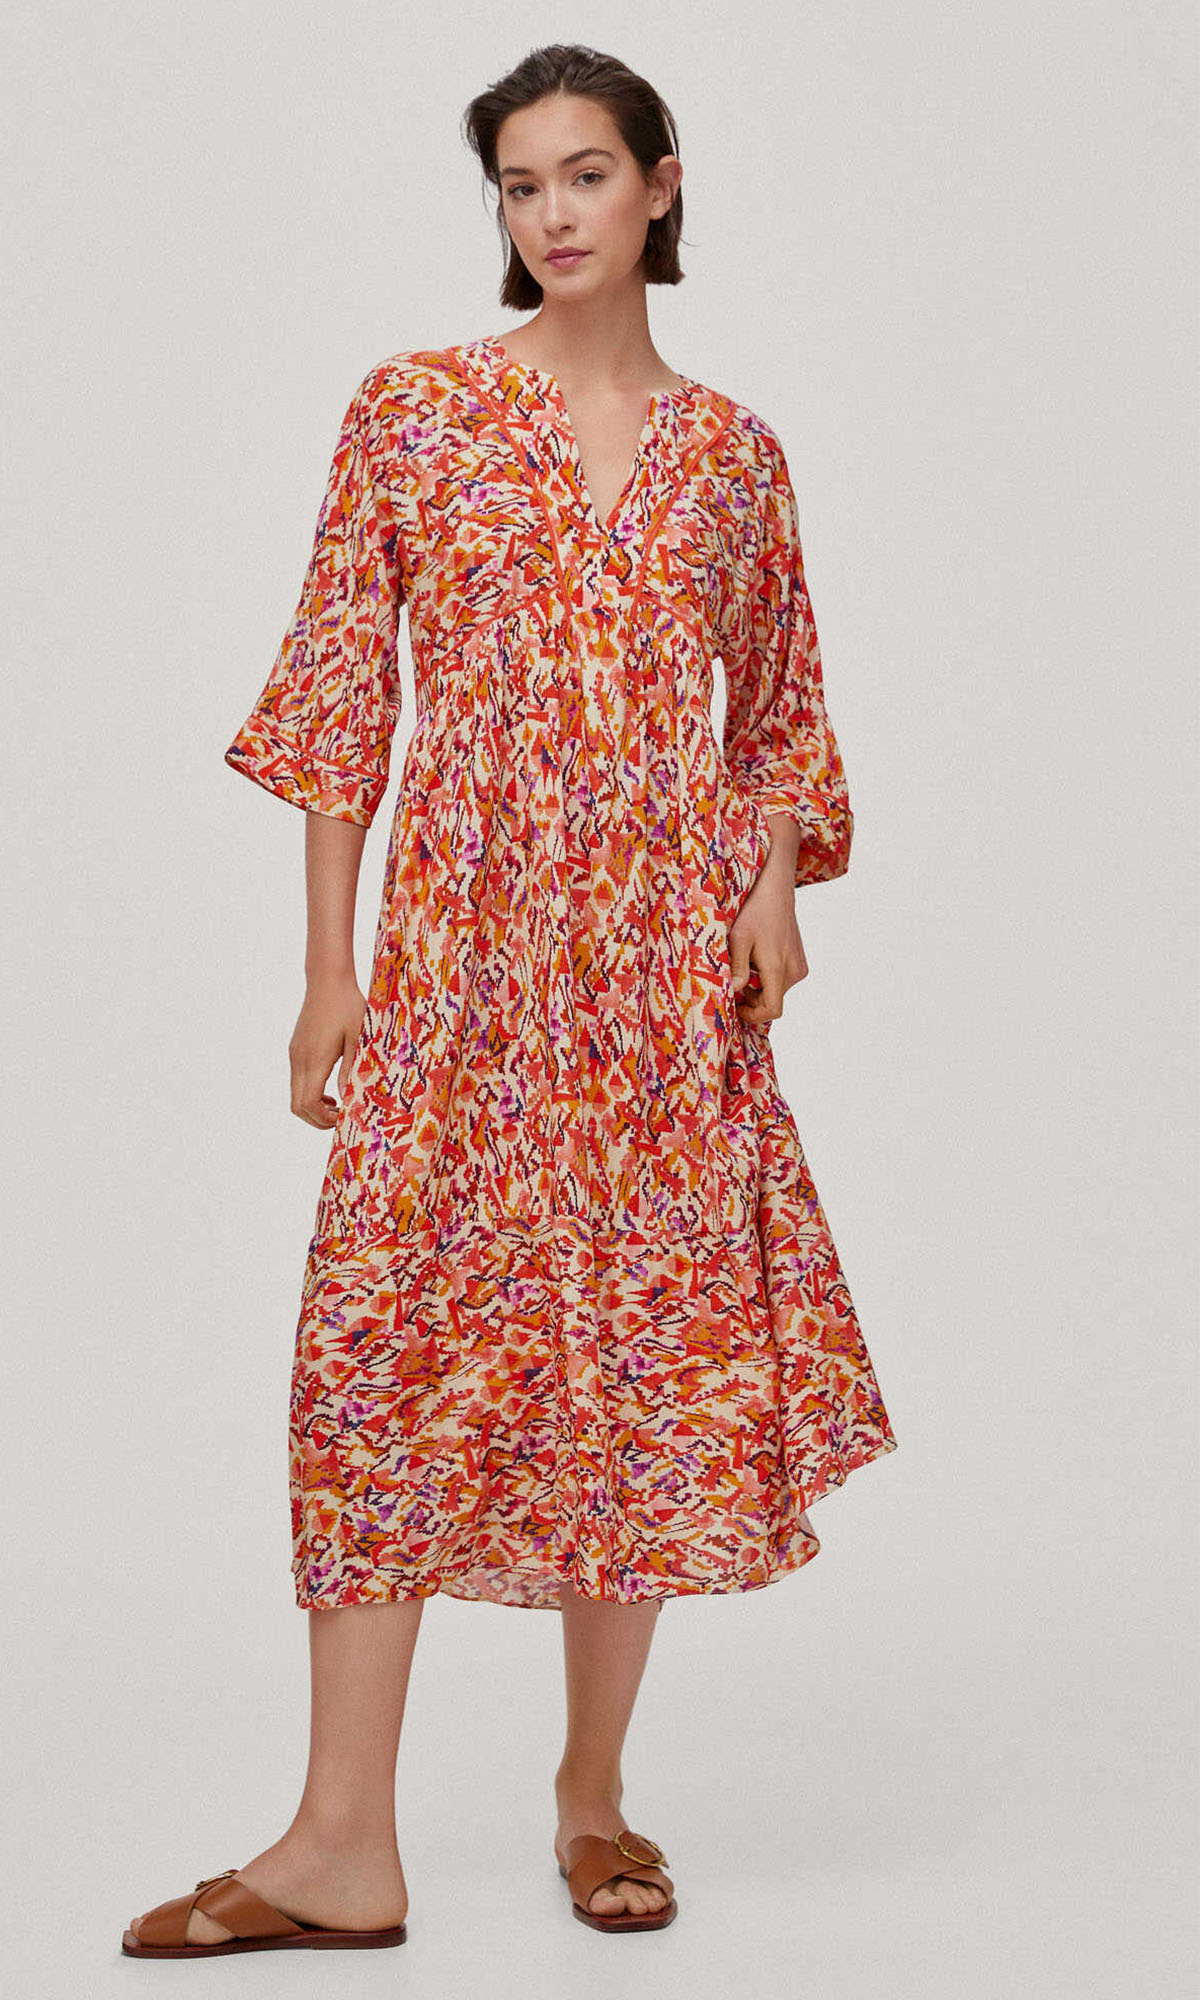 Un vestido maxi estampado: sofisticación y frescura en una prenda ligera y versáti.